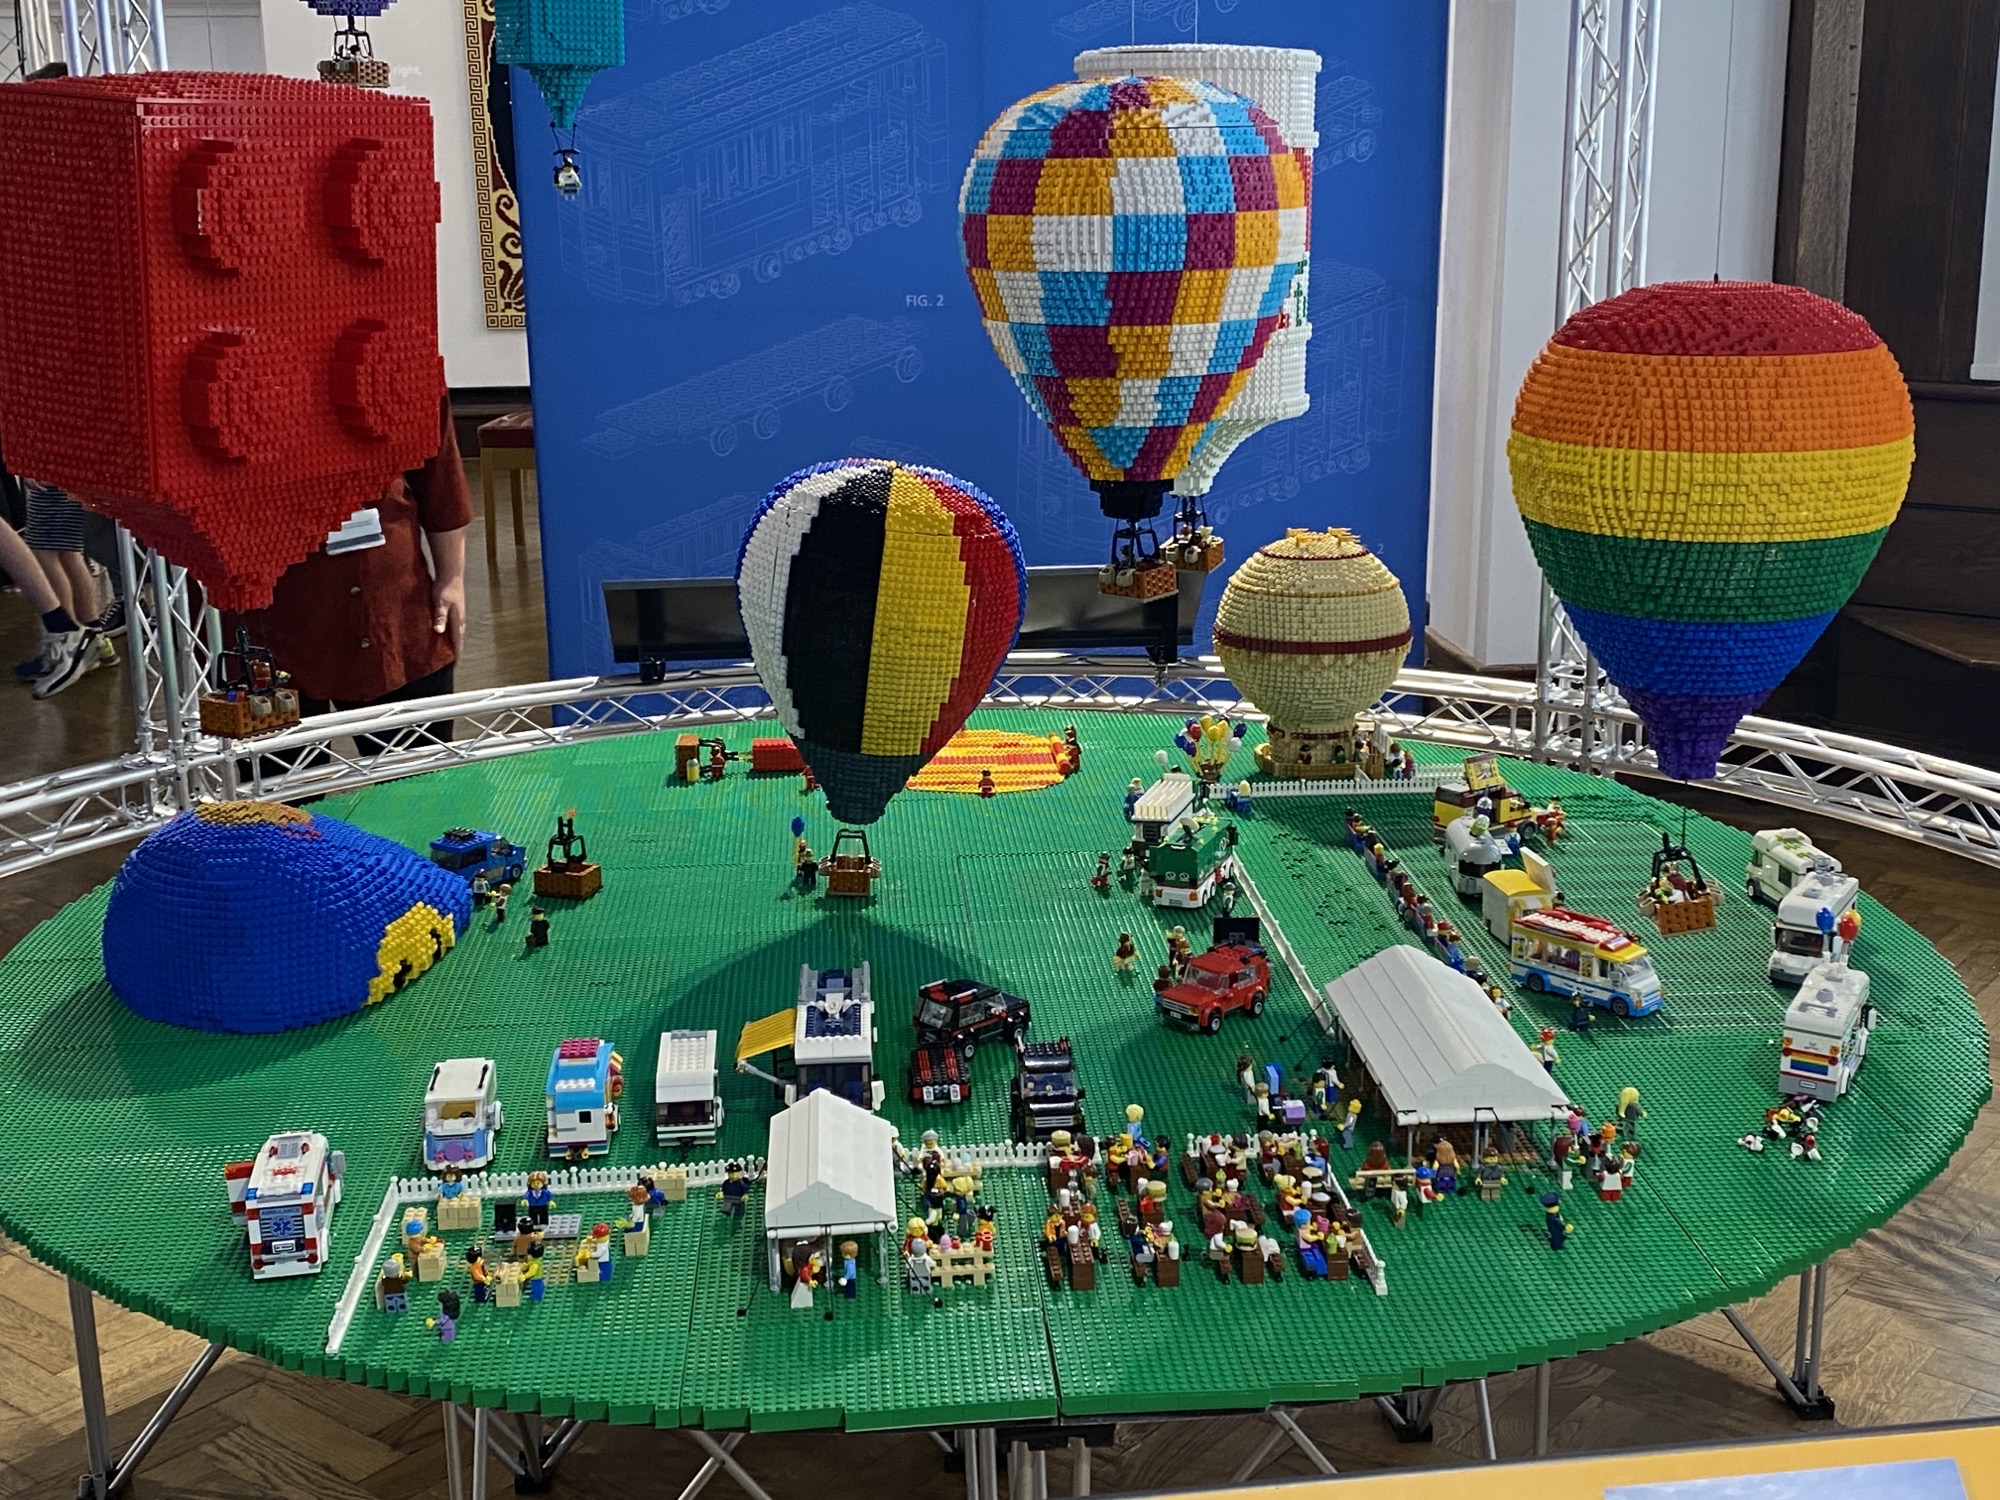 Lego hot air balloons